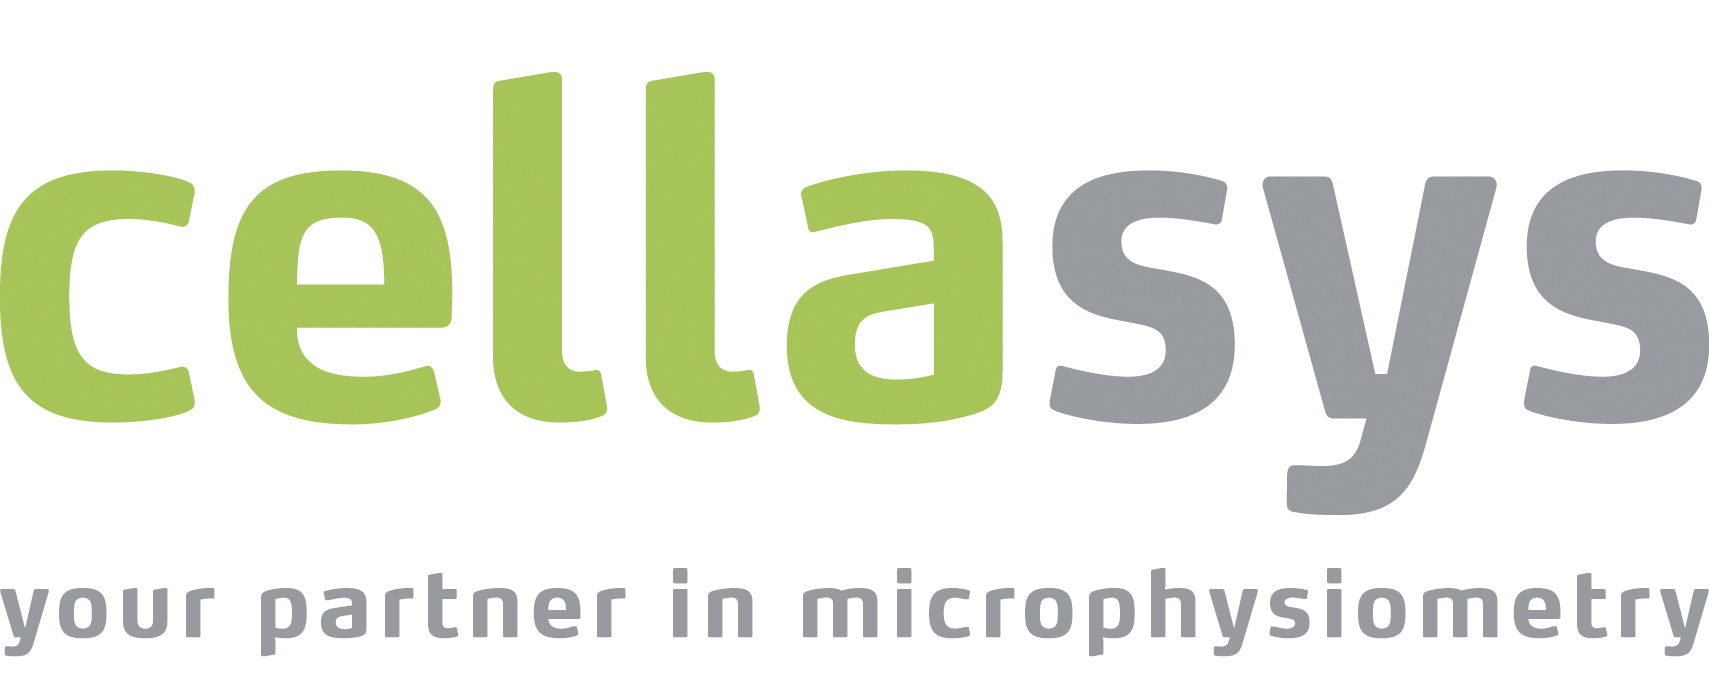 cellasys GmbH